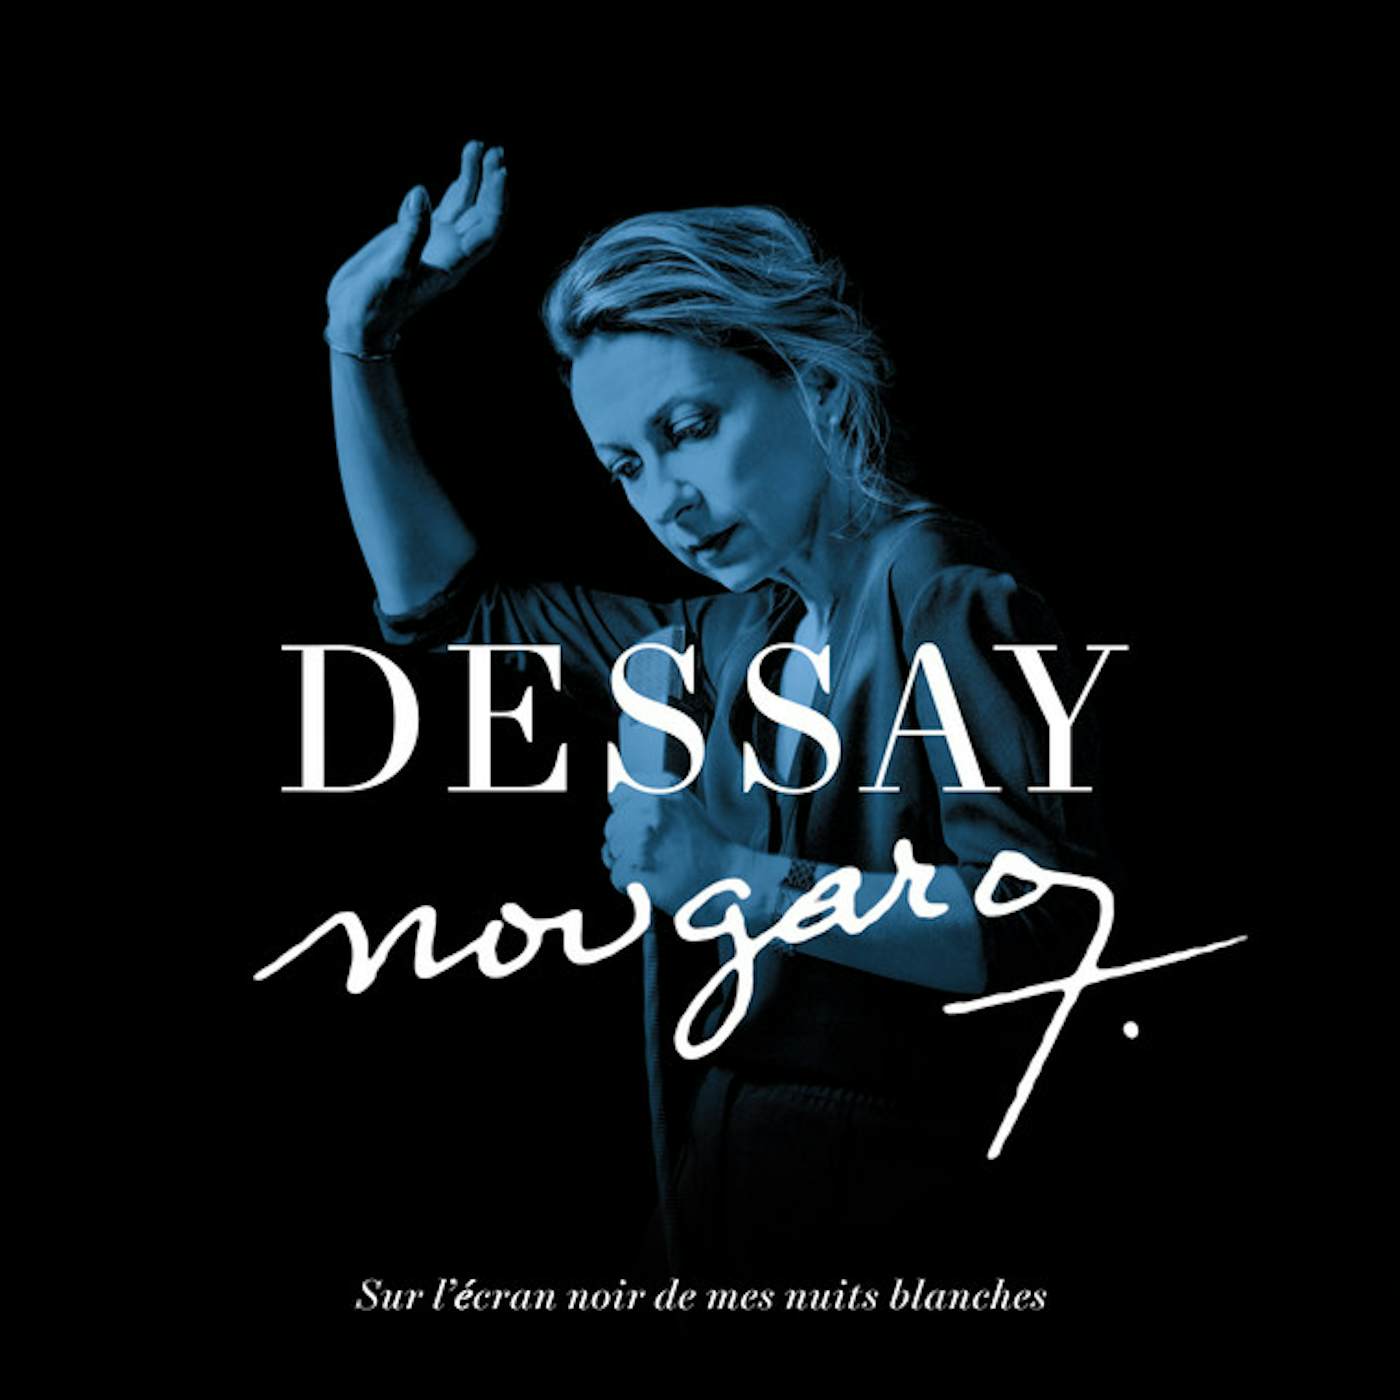 Natalie Dessay NOUGARO: SUR L'ECRAN NOIR DESSAY NUITS BLANCHES CD